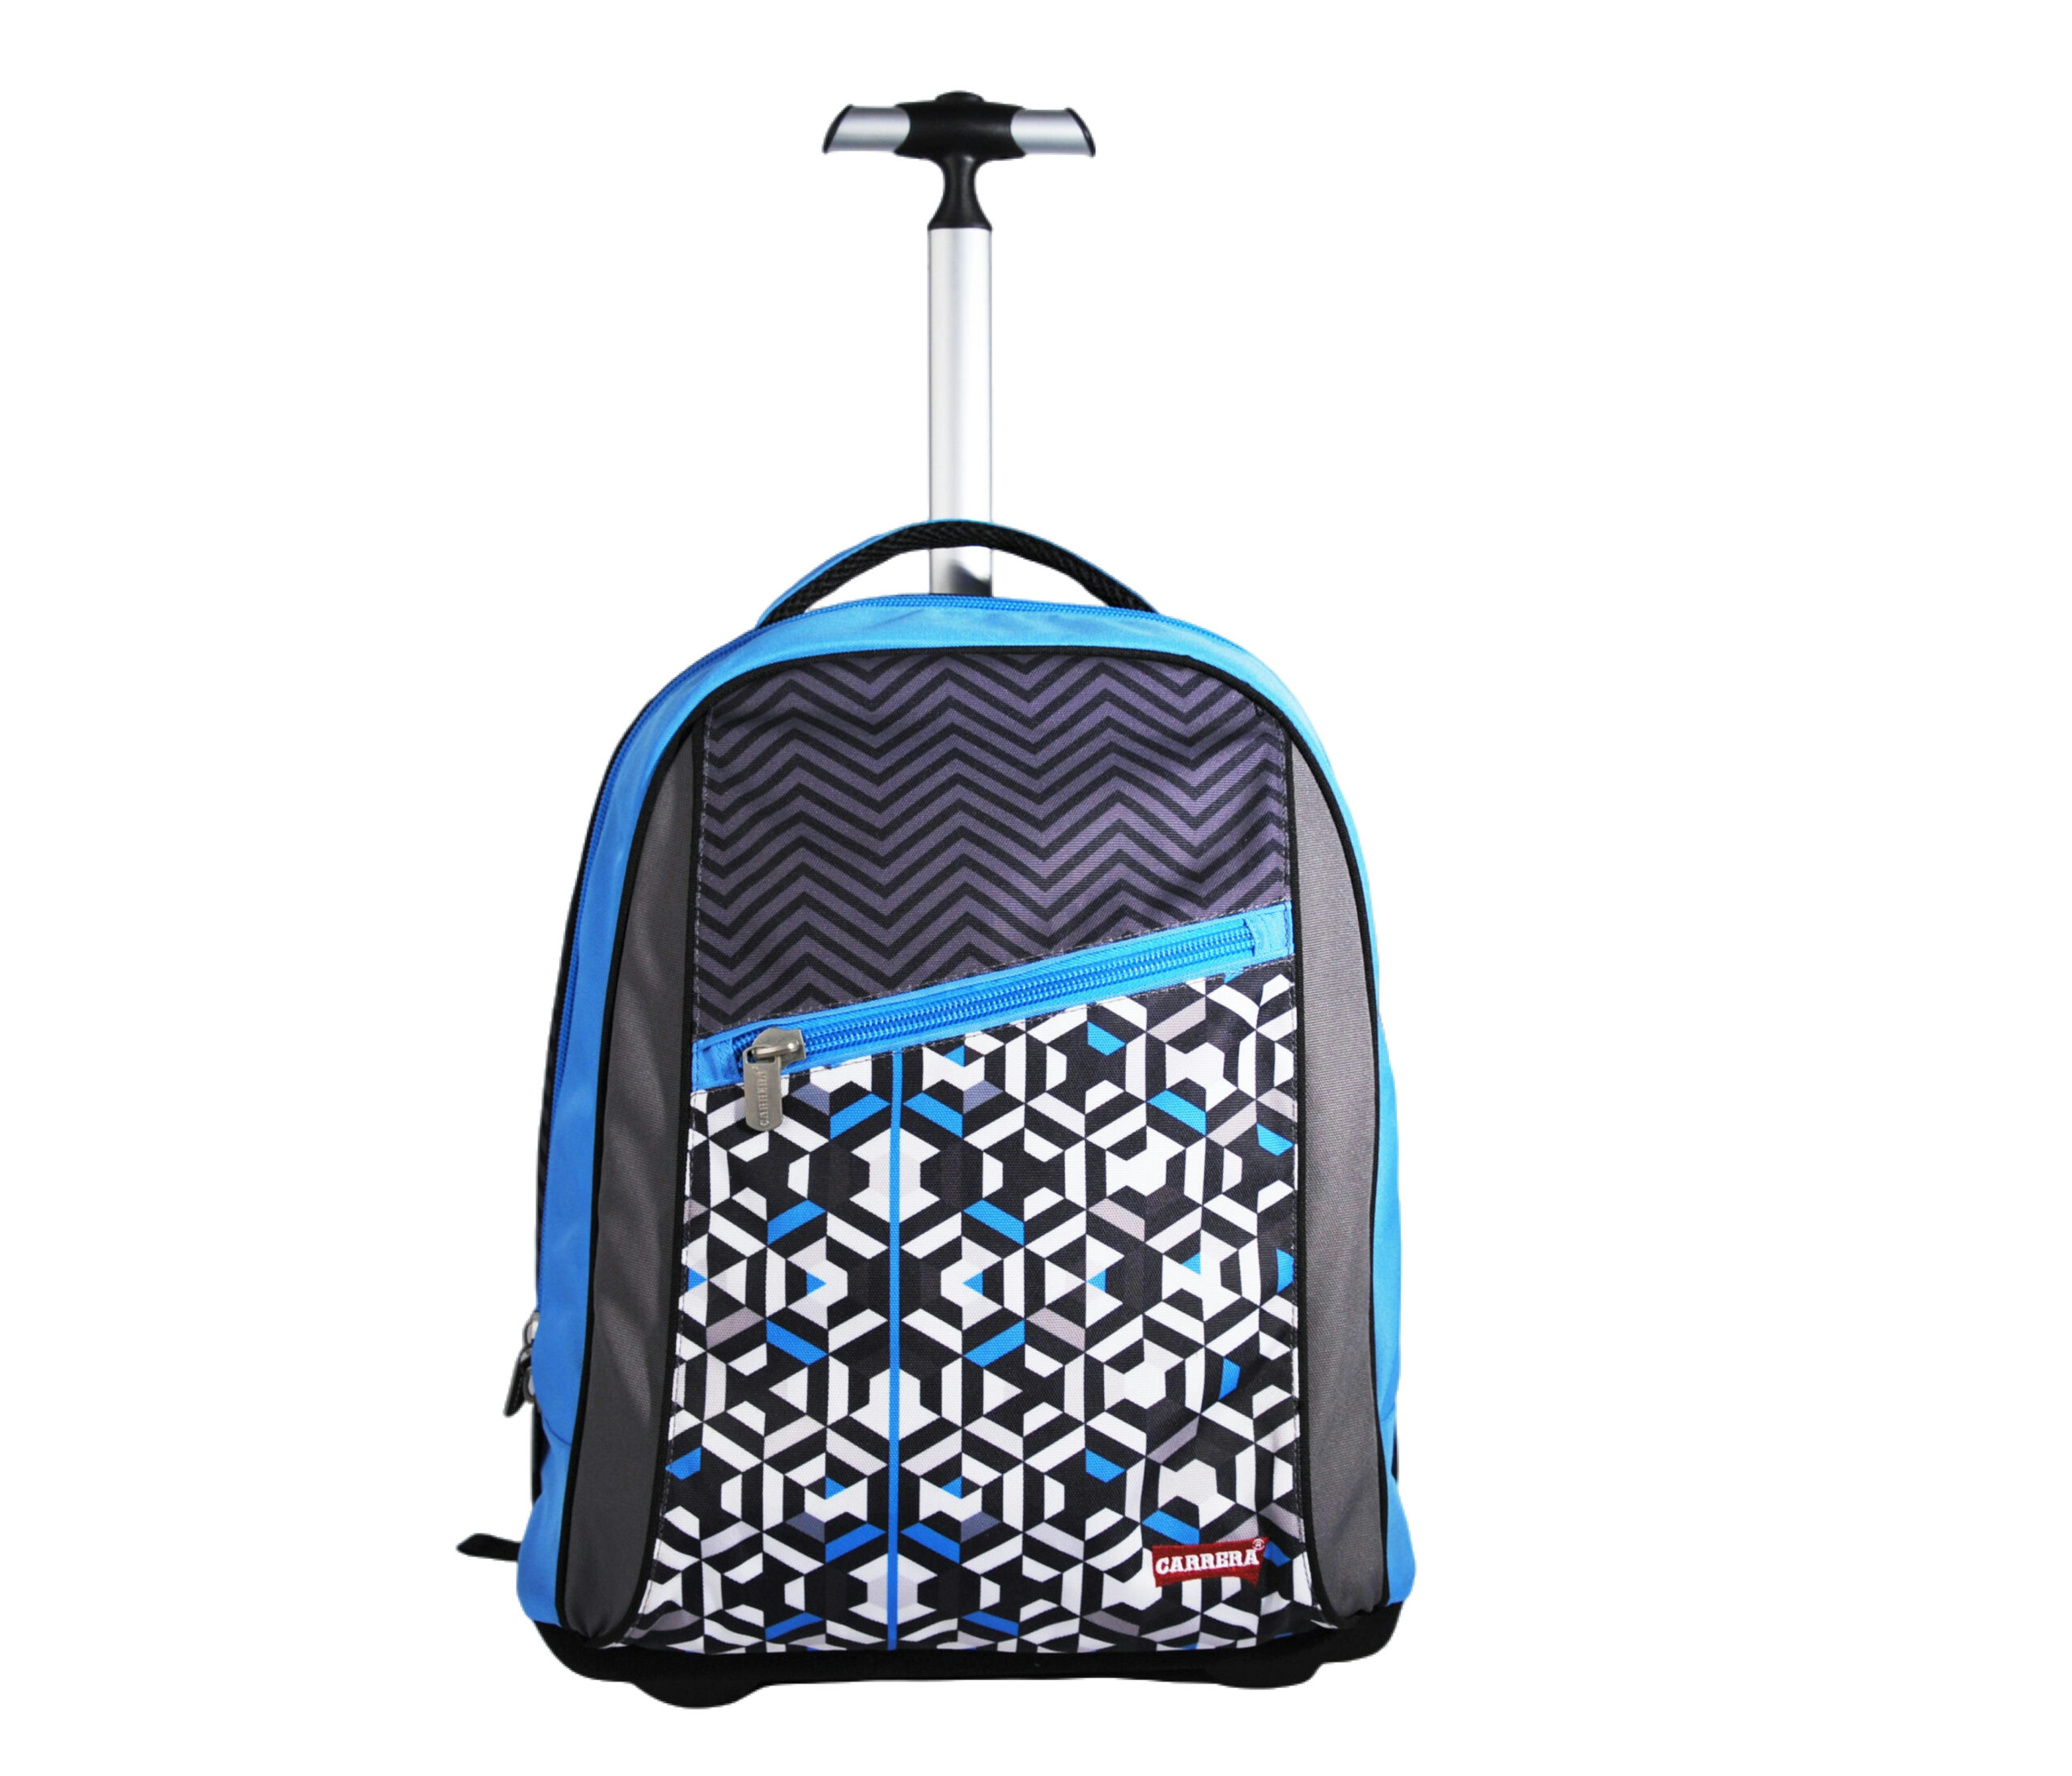 Backpack PK 15002 2A 7